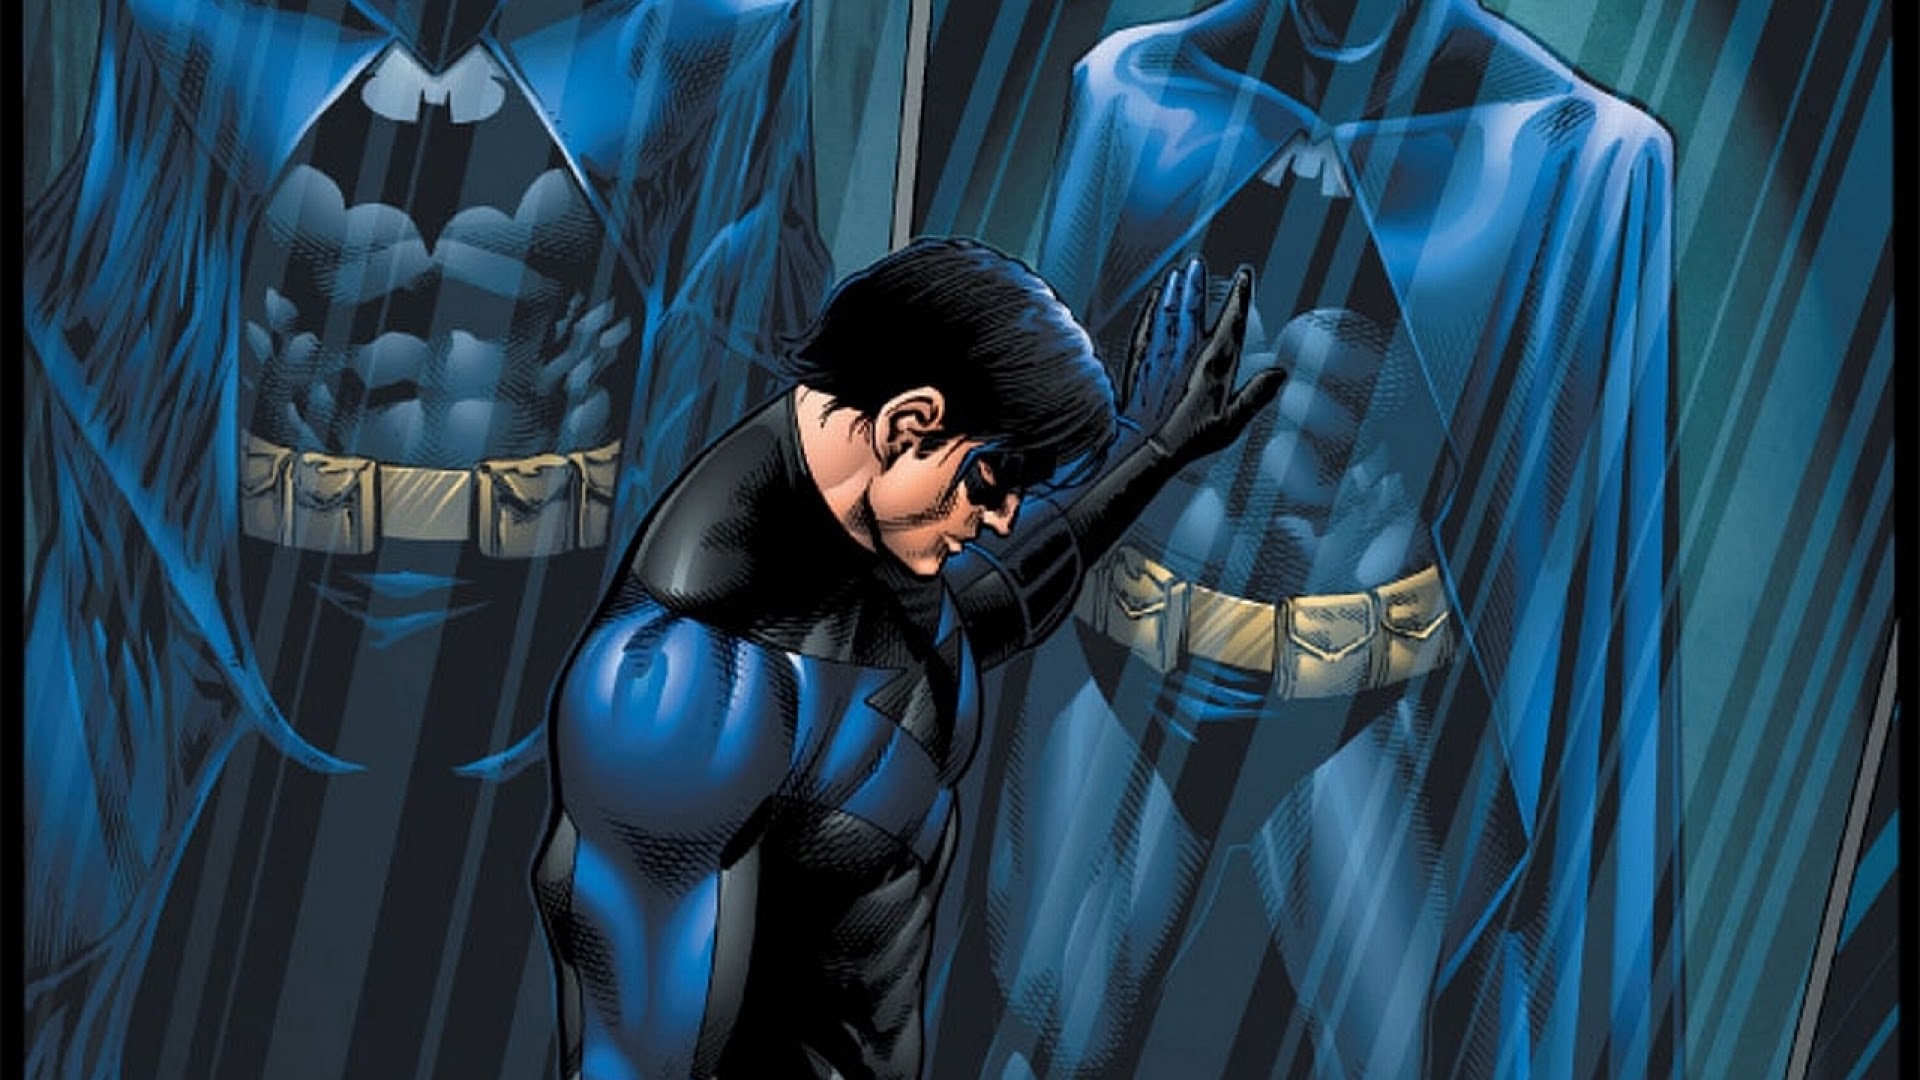 ｃｉａ こちら映画中央情報局です Nightwing 新監督が決定した ザ バットマン のベン アフレックは やっぱり撤退 新しいバットマン誕生につながる ナイトウィング の企画製作が進んでいることが伝えられた